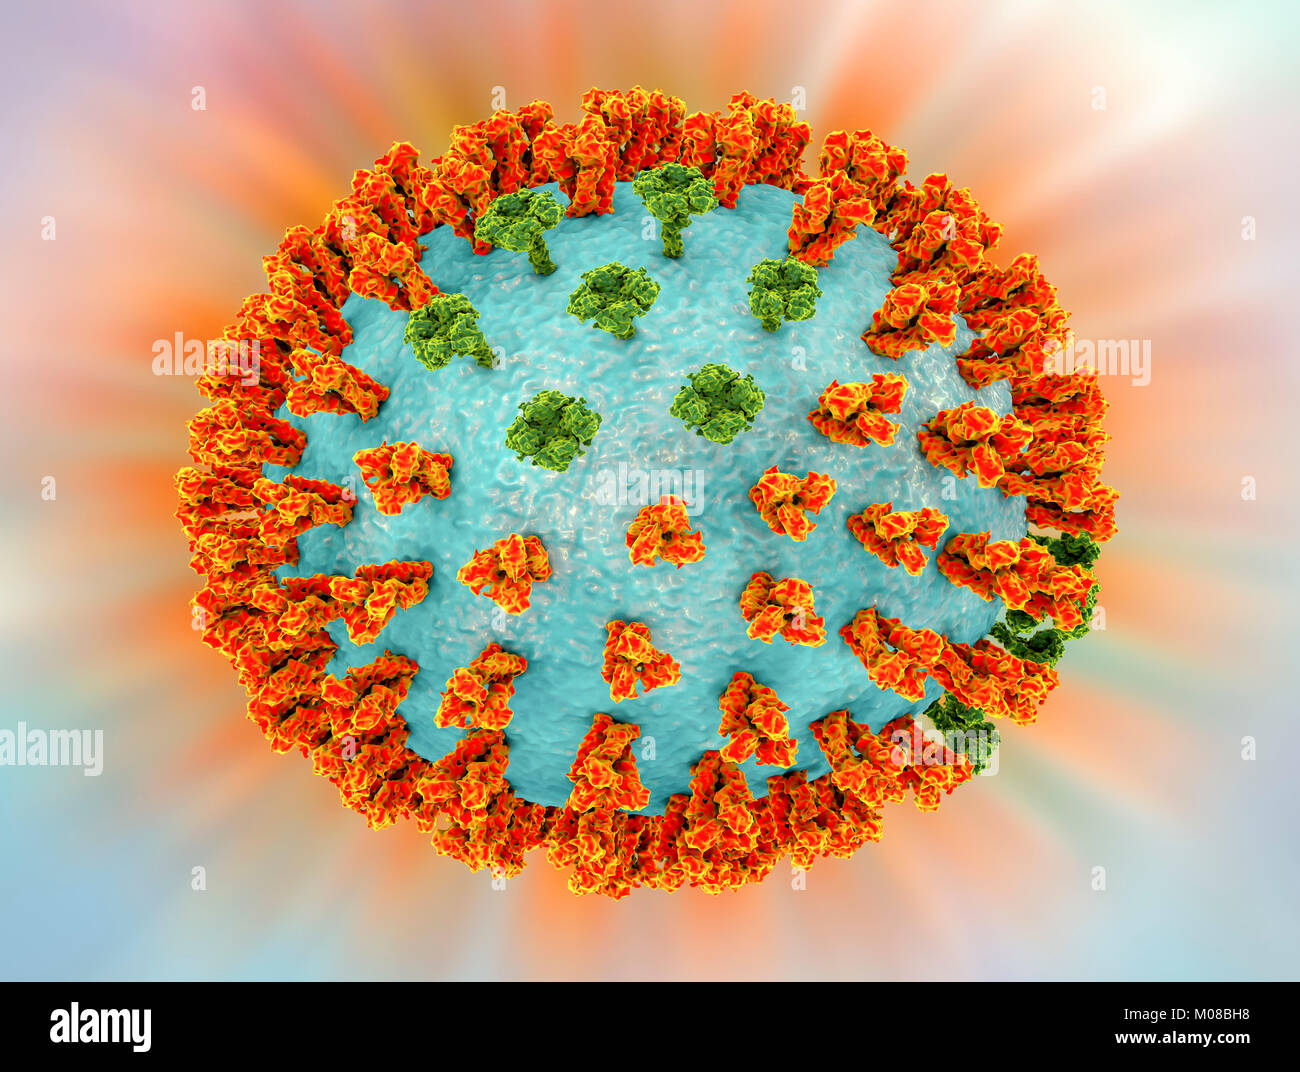 Influenza Virus H3N2-Stamm handelt. 3D-Abbildung: surface Glycoprotein spikes Hämagglutinin (orange) und die neuraminidase (grün) auf eine Influenza (Grippe) Viruspartikel. Hämagglutinin spielt eine Rolle bei der Bindung des Virus an menschliche Zellen der Atemwege. Die Neuraminidase spielt eine Rolle bei der Freigabe der neu gebildeten Viruspartikeln aus infizierten Zellen. H3N2-Viren sind in der Lage, Vögel und Säugetiere sowie Menschen anstecken. Sie verursachen oft mehr schwere Infektionen in der Jungen und Älteren als andere Grippebelastungen, und sie kann zur Erhöhung der Krankenhauseinweisungen und Todesfällen führen. Stockfoto